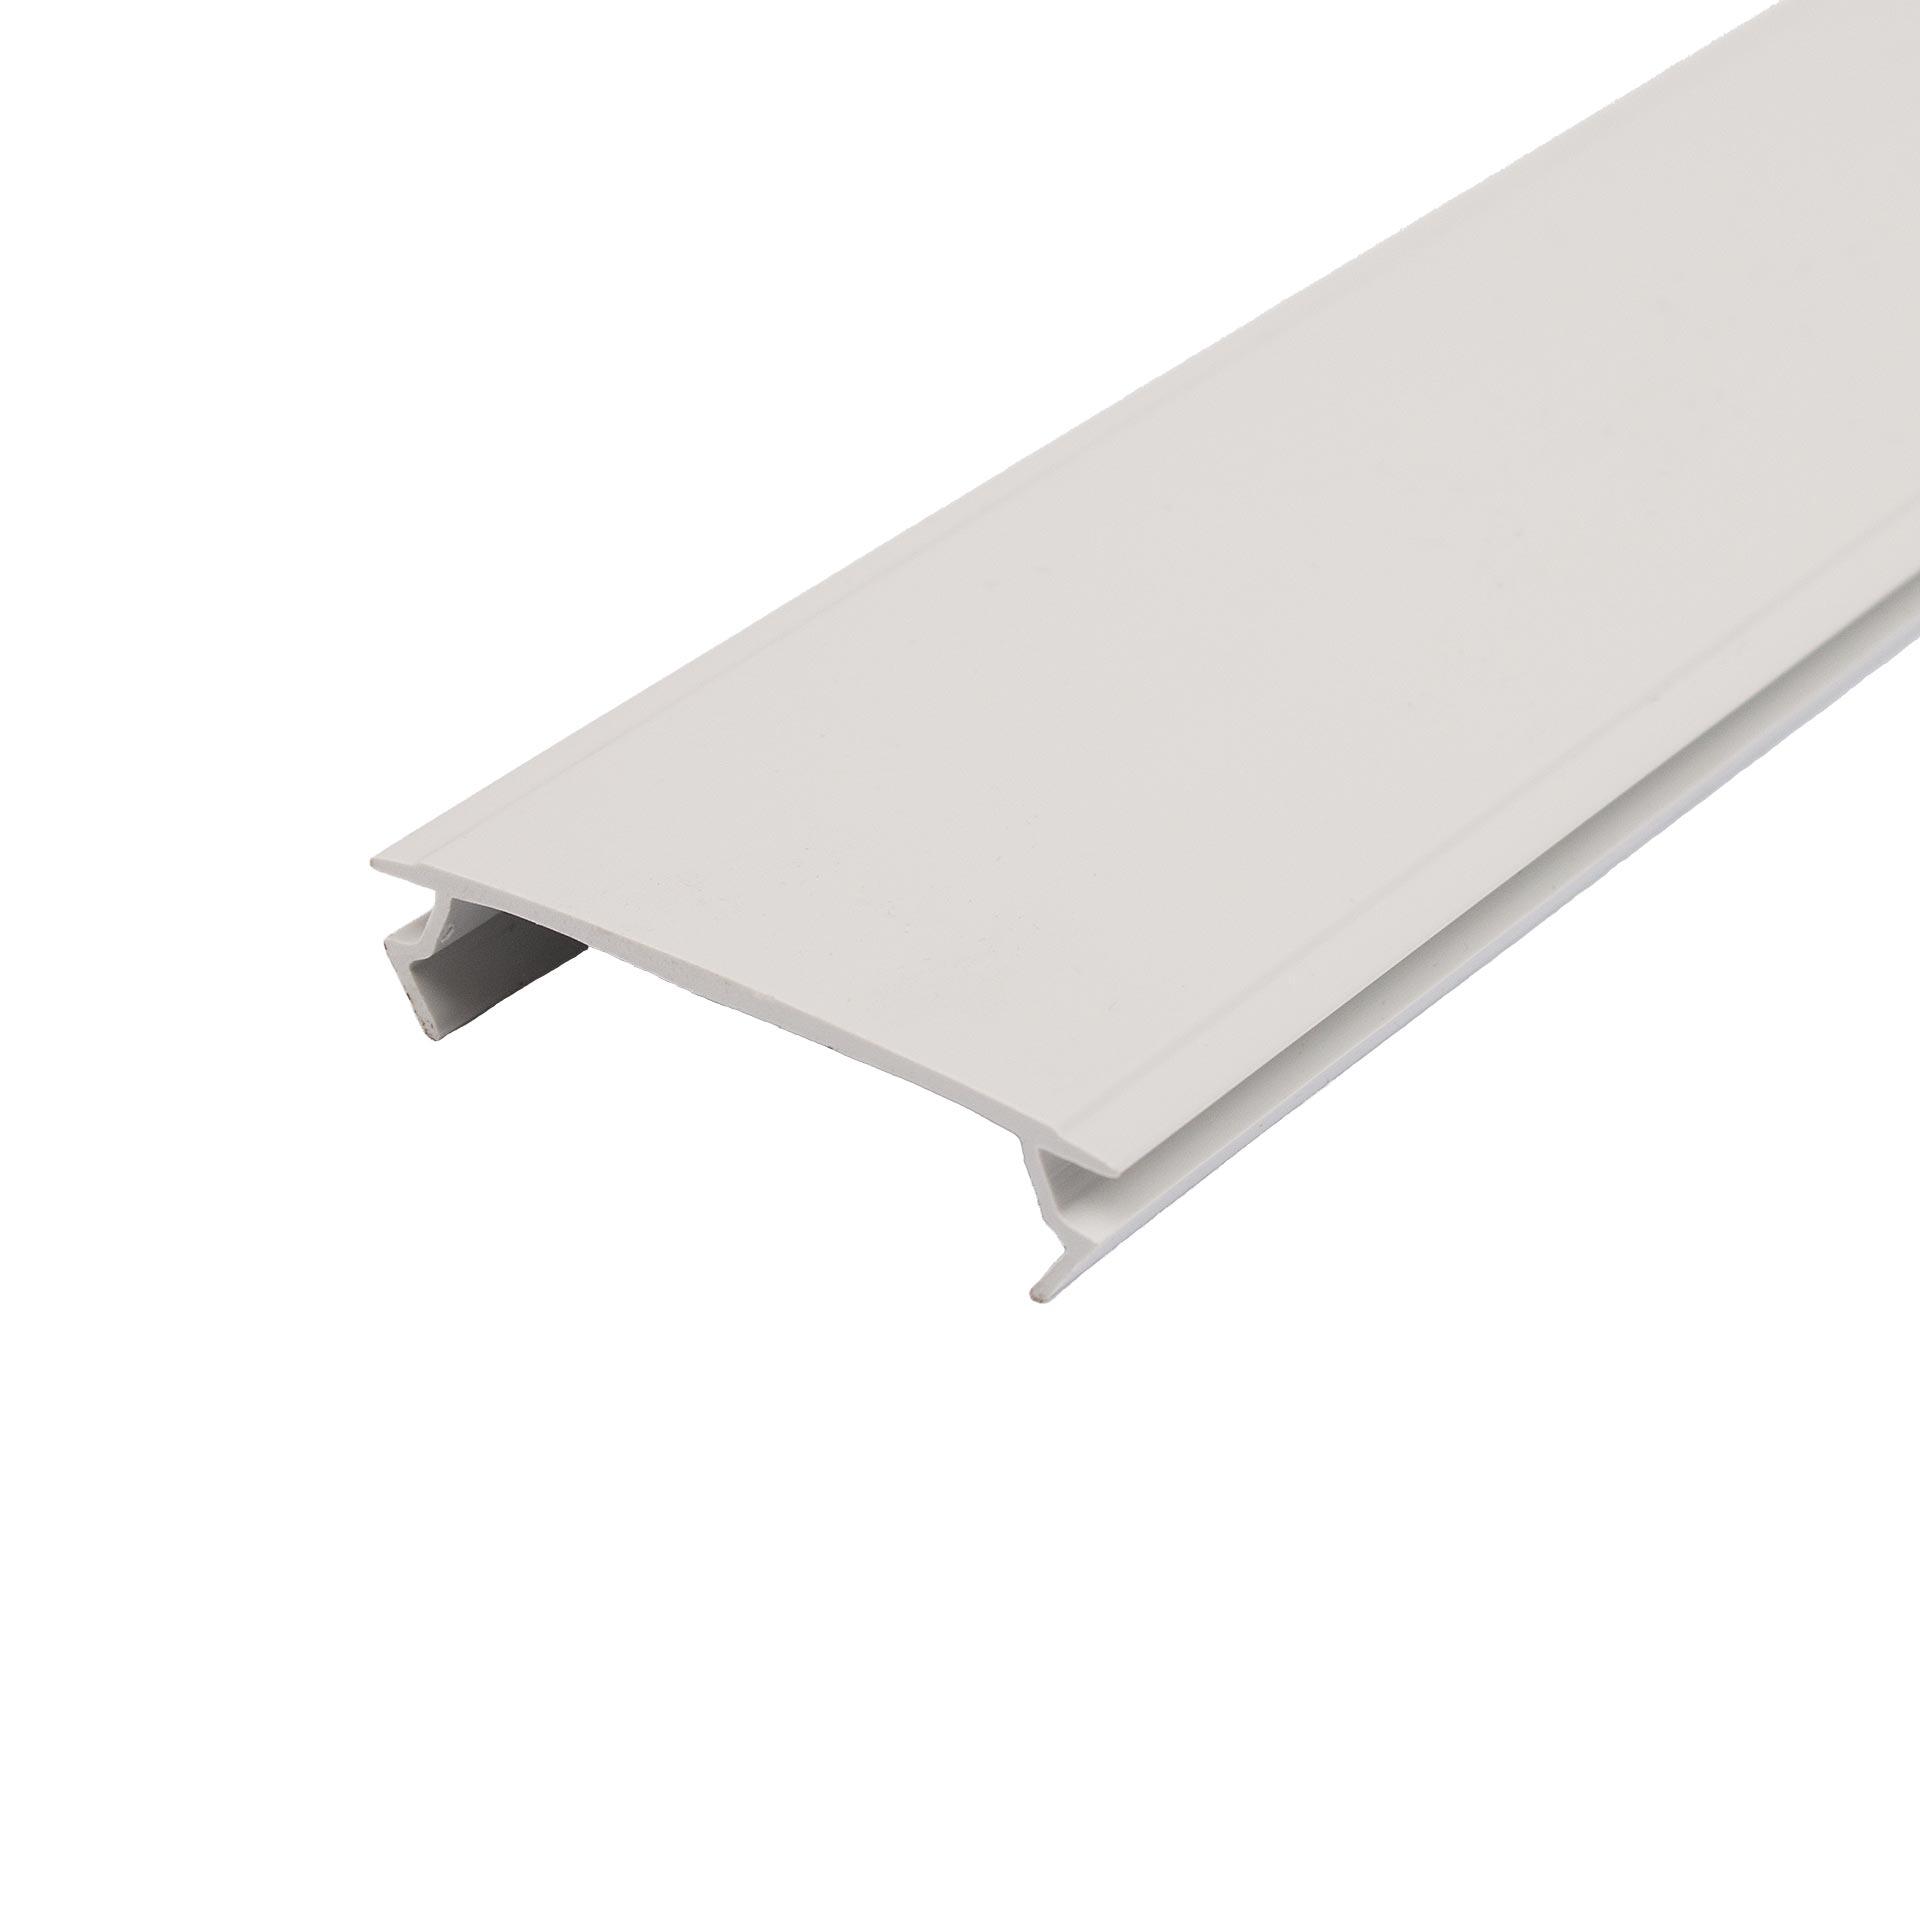 Profil obturateur, PVC gris clair RAL 7035, 2 mètres de long